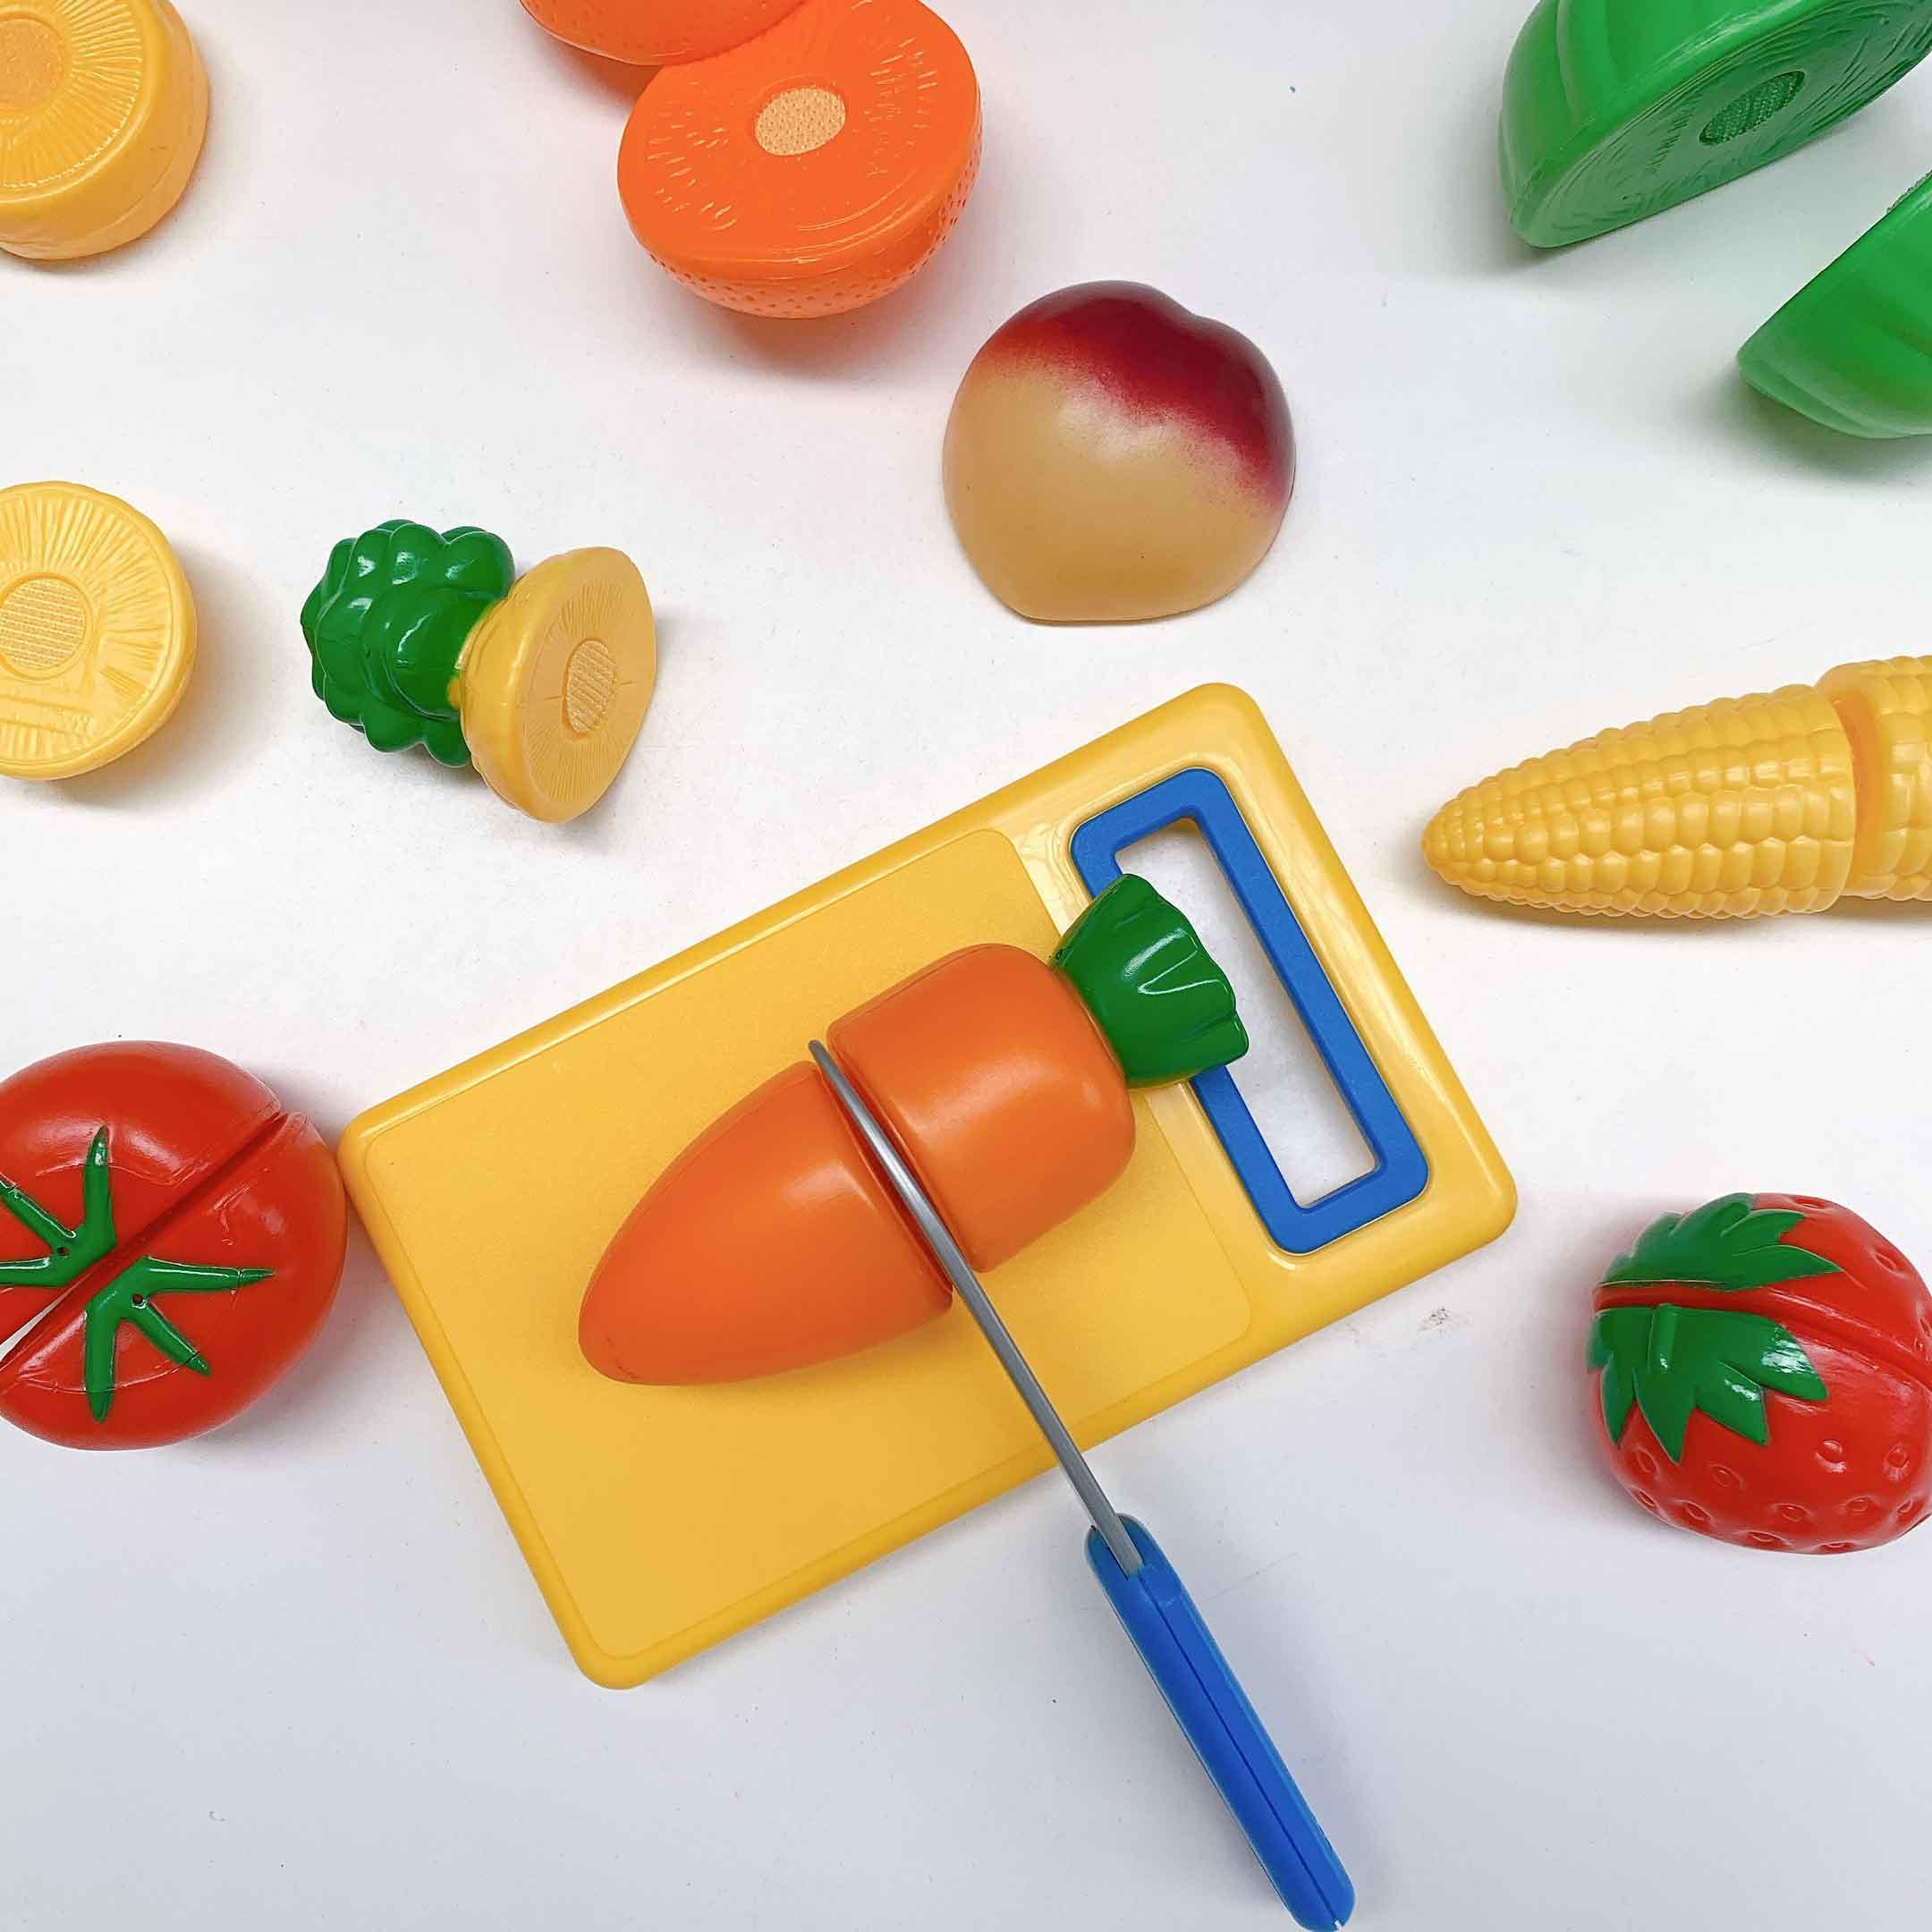 Learning Resources Bộ đồ chơi nhà bếp chủ đề cắt rau củ - Pretend &amp; Play Fruit, Cutting Fruits and Veggies Toy